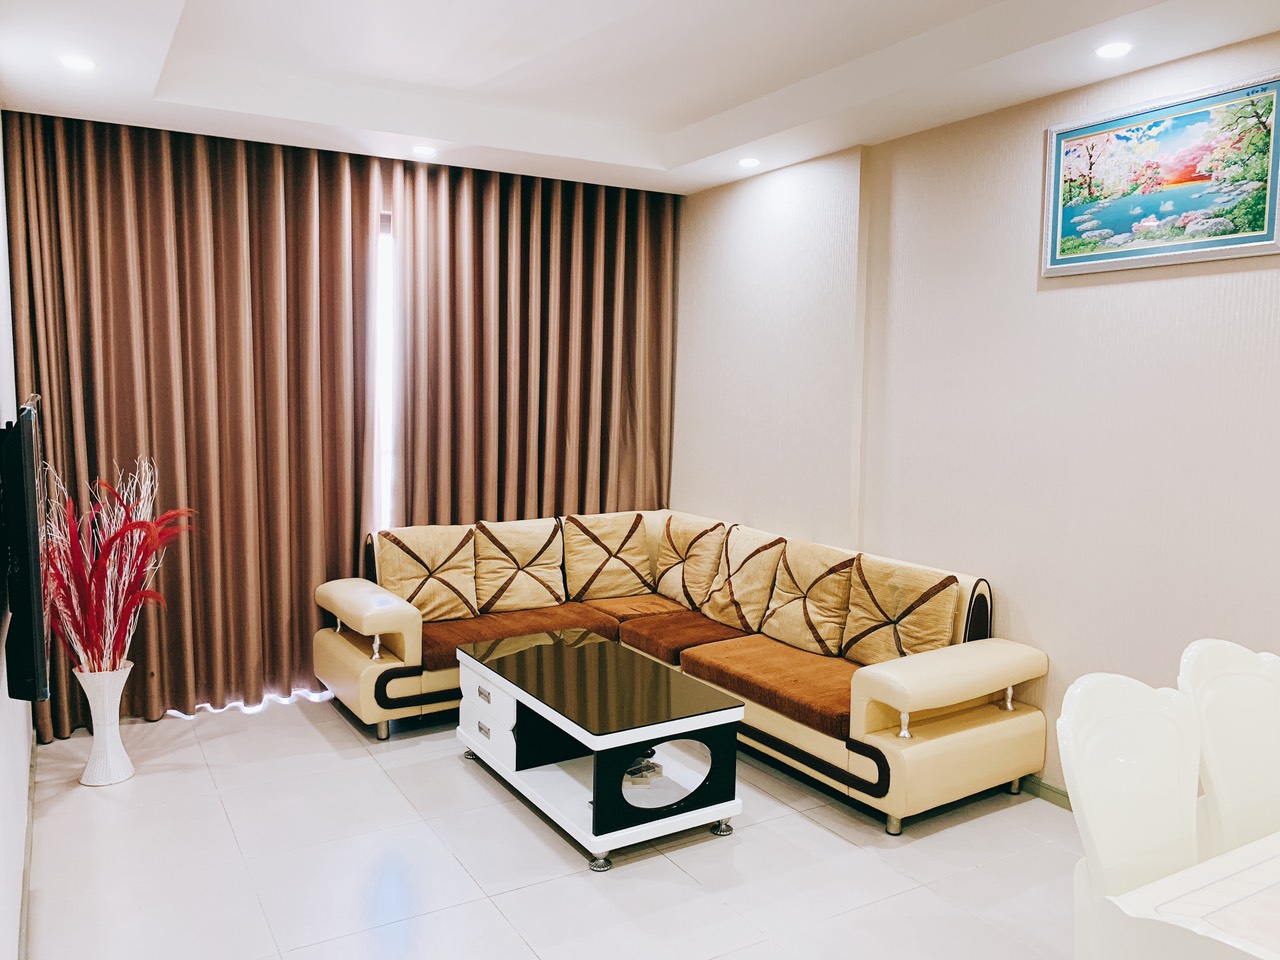 Căn hộ chung cư Lotus Garden Q. Tân Phú diện tích 89m2. 2pn giá 11.5tr/tháng, nội thất full